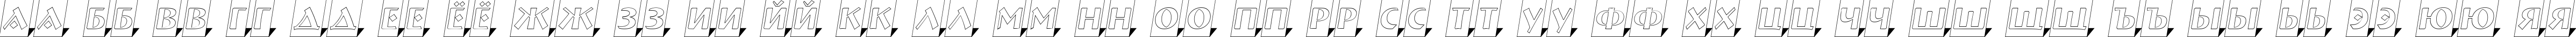 Пример написания русского алфавита шрифтом a_BremenlCmOtl3DSh